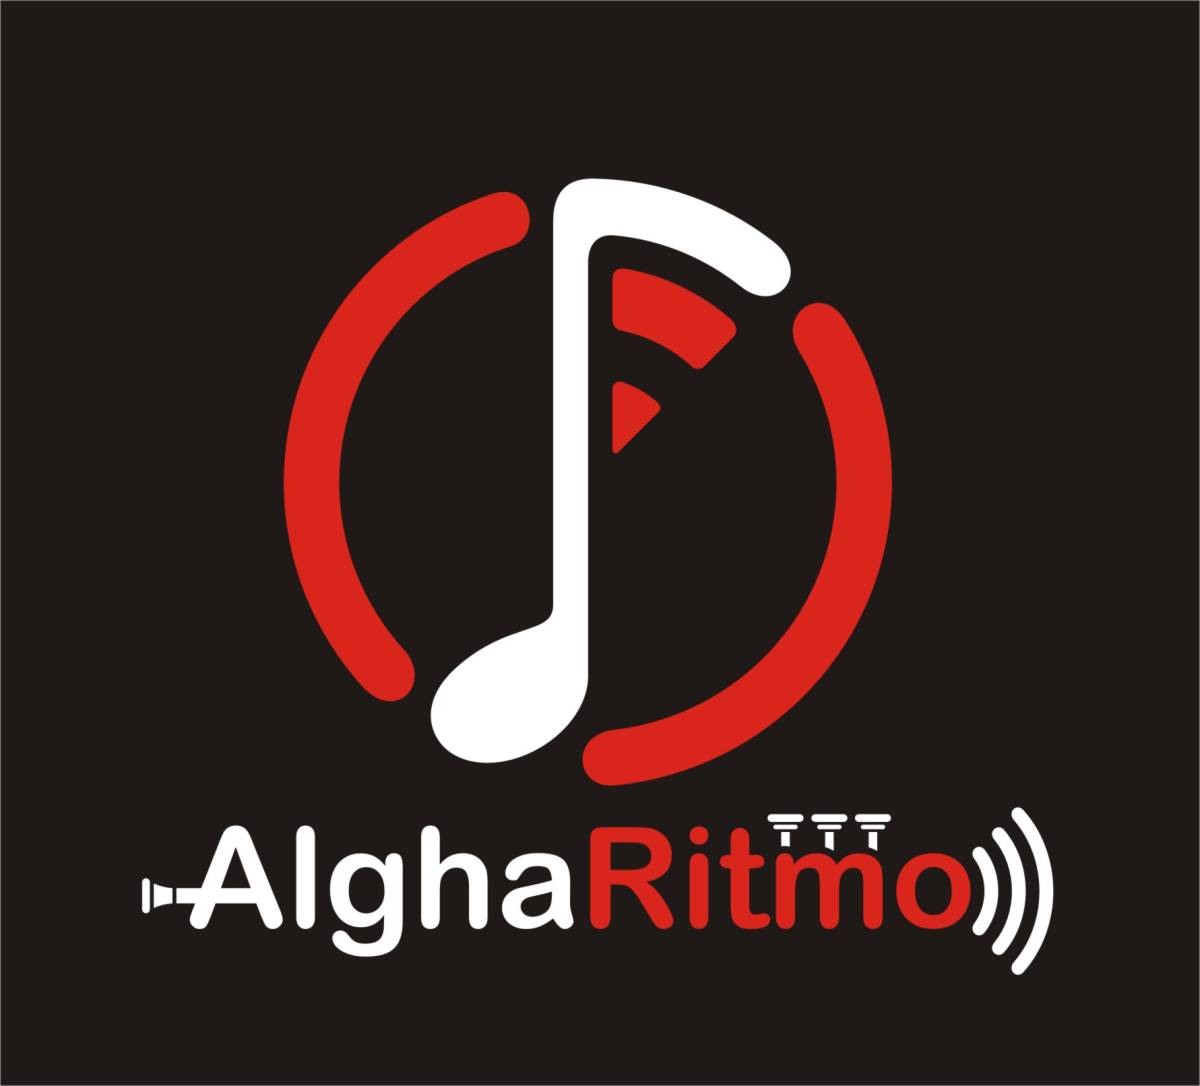 Algharitmo - Serviços técnicos de som Lda. - Albufeira - Edição de Vídeo